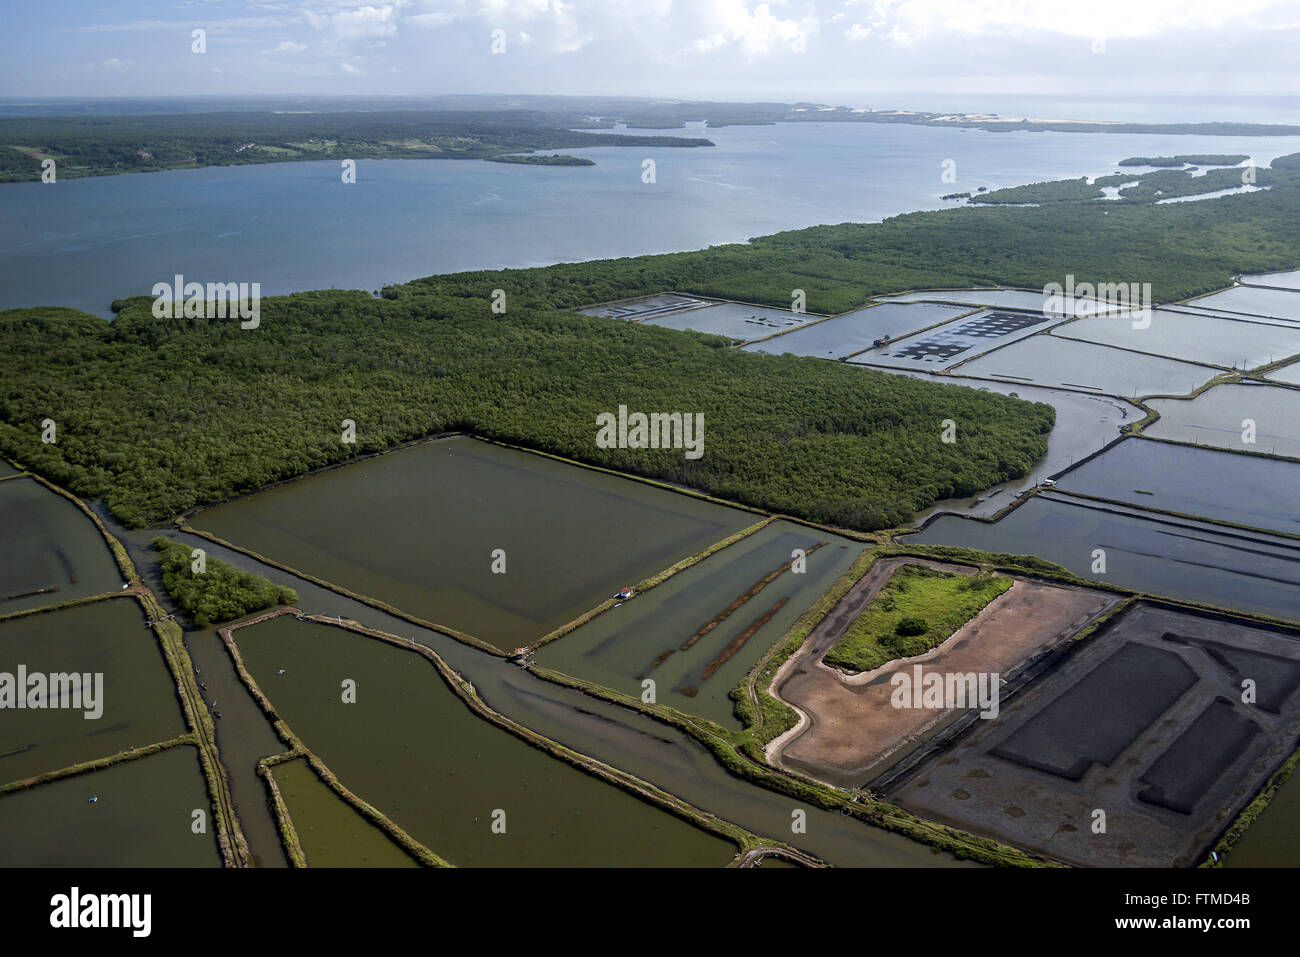 Vista aerea de lagoas de cultivo de camarao Stock Photo